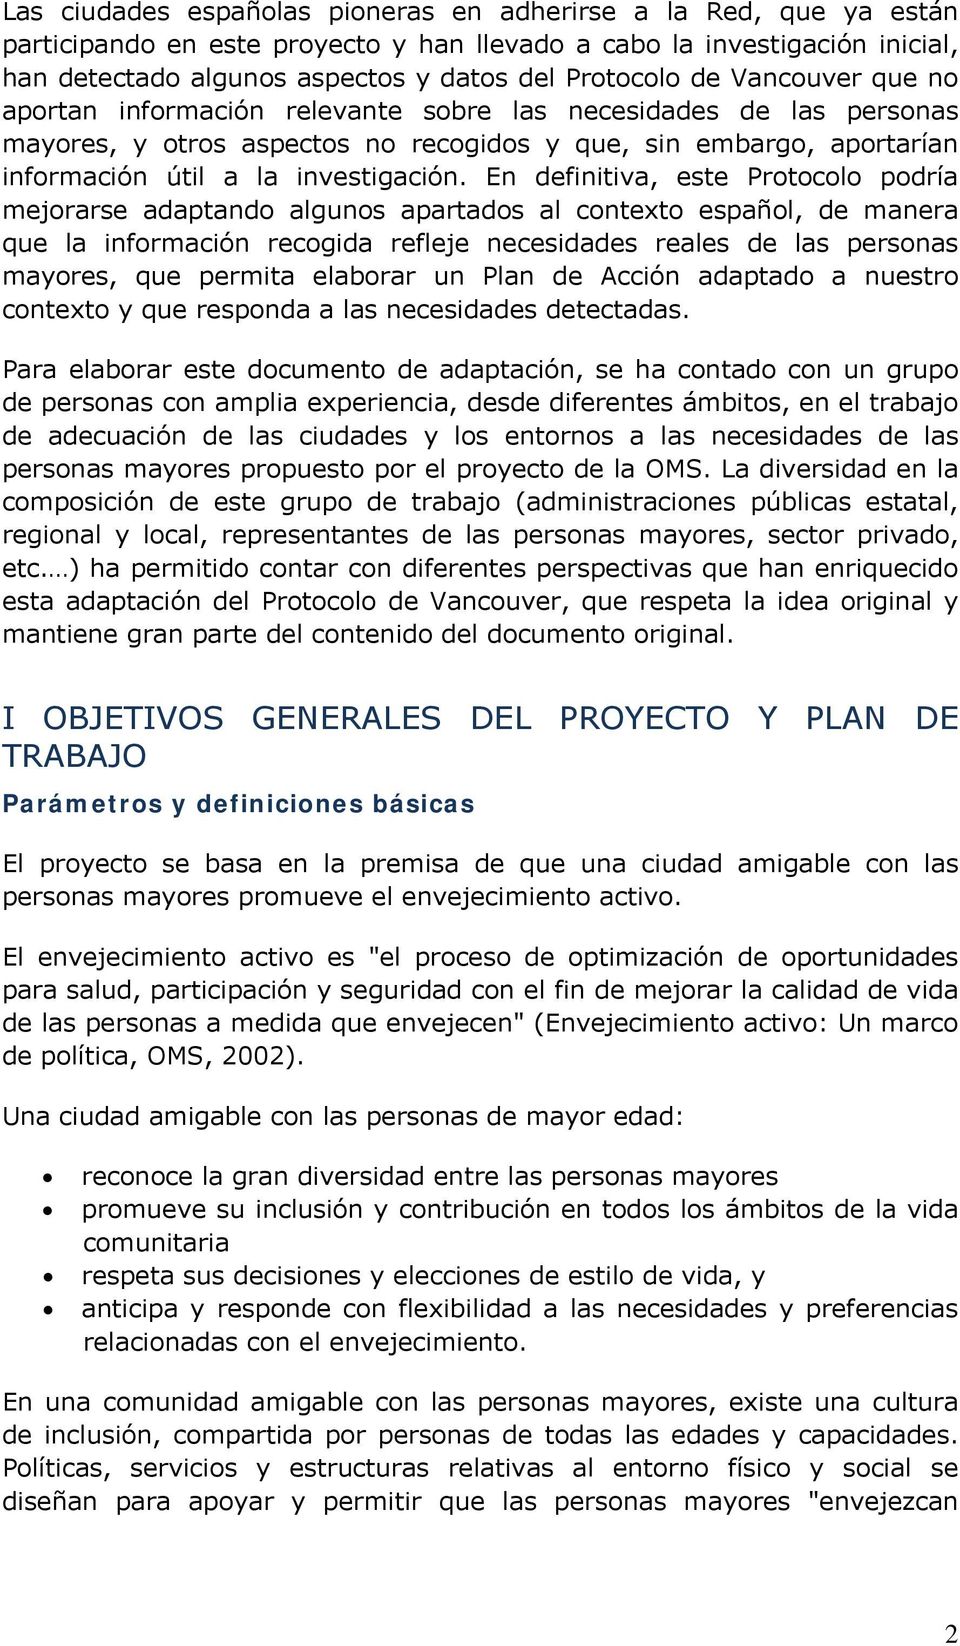 En definitiva, este Protocolo podría mejorarse adaptando algunos apartados al contexto español, de manera que la información recogida refleje necesidades reales de las personas mayores, que permita